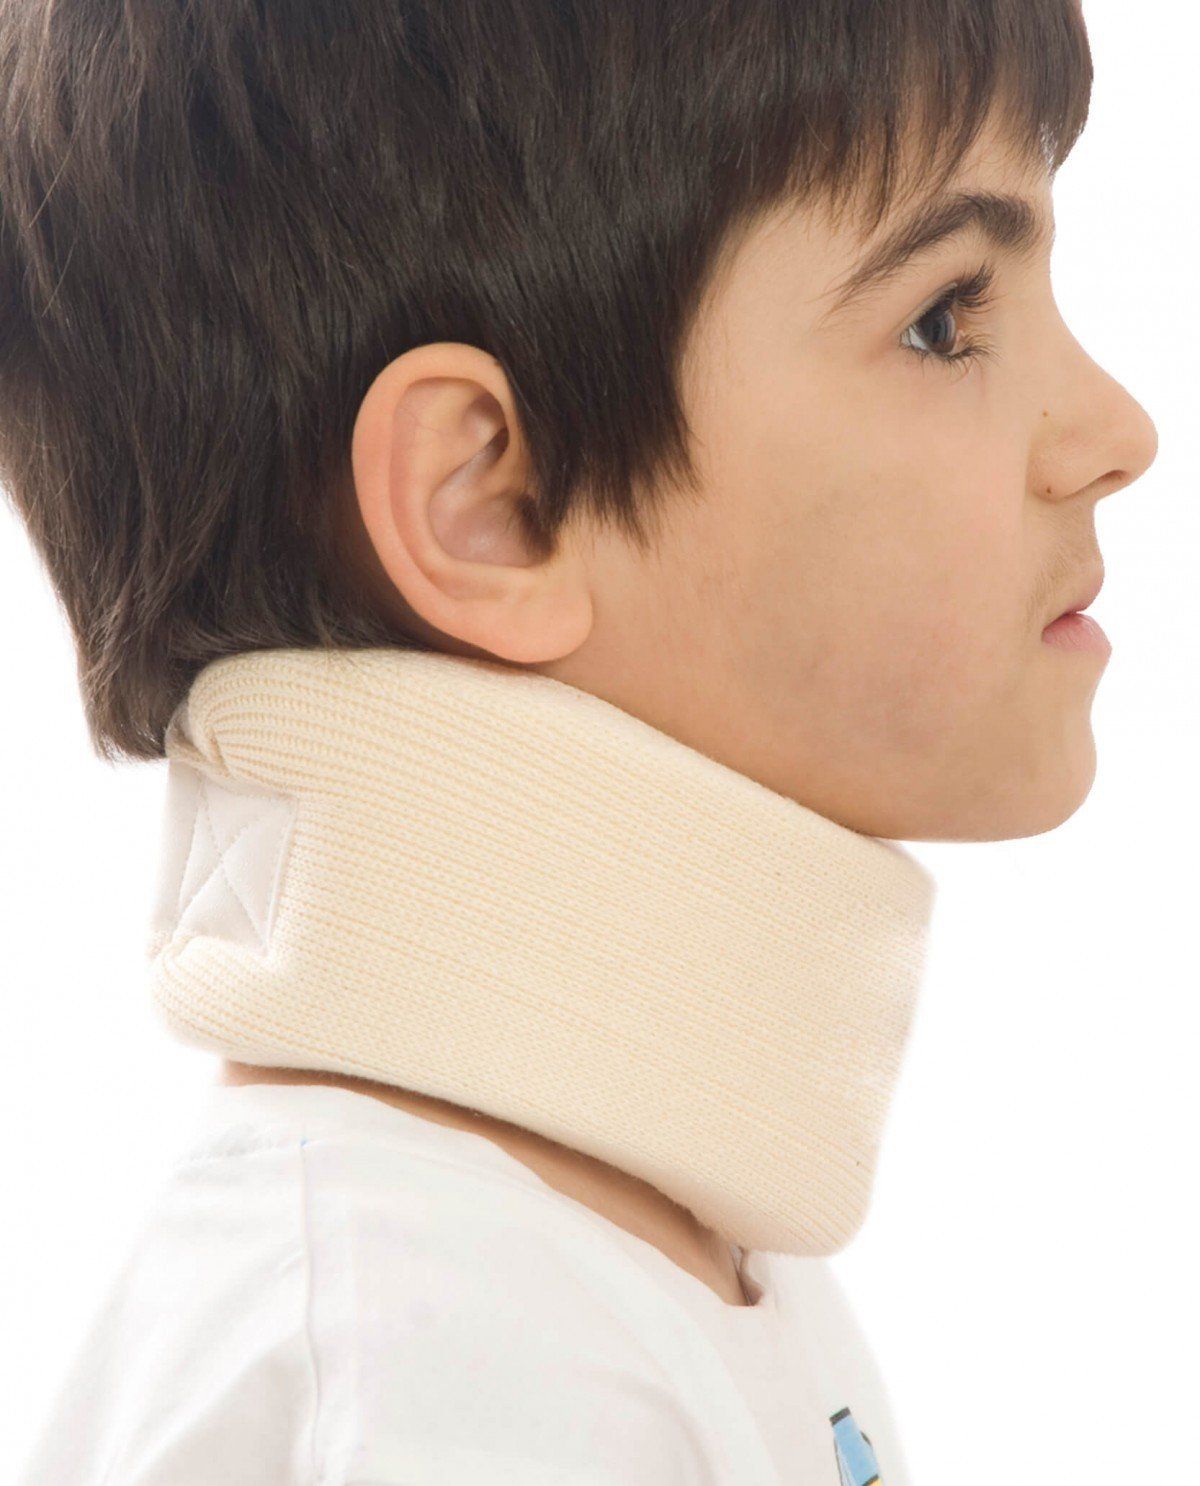 neck brace from Morsa for kids